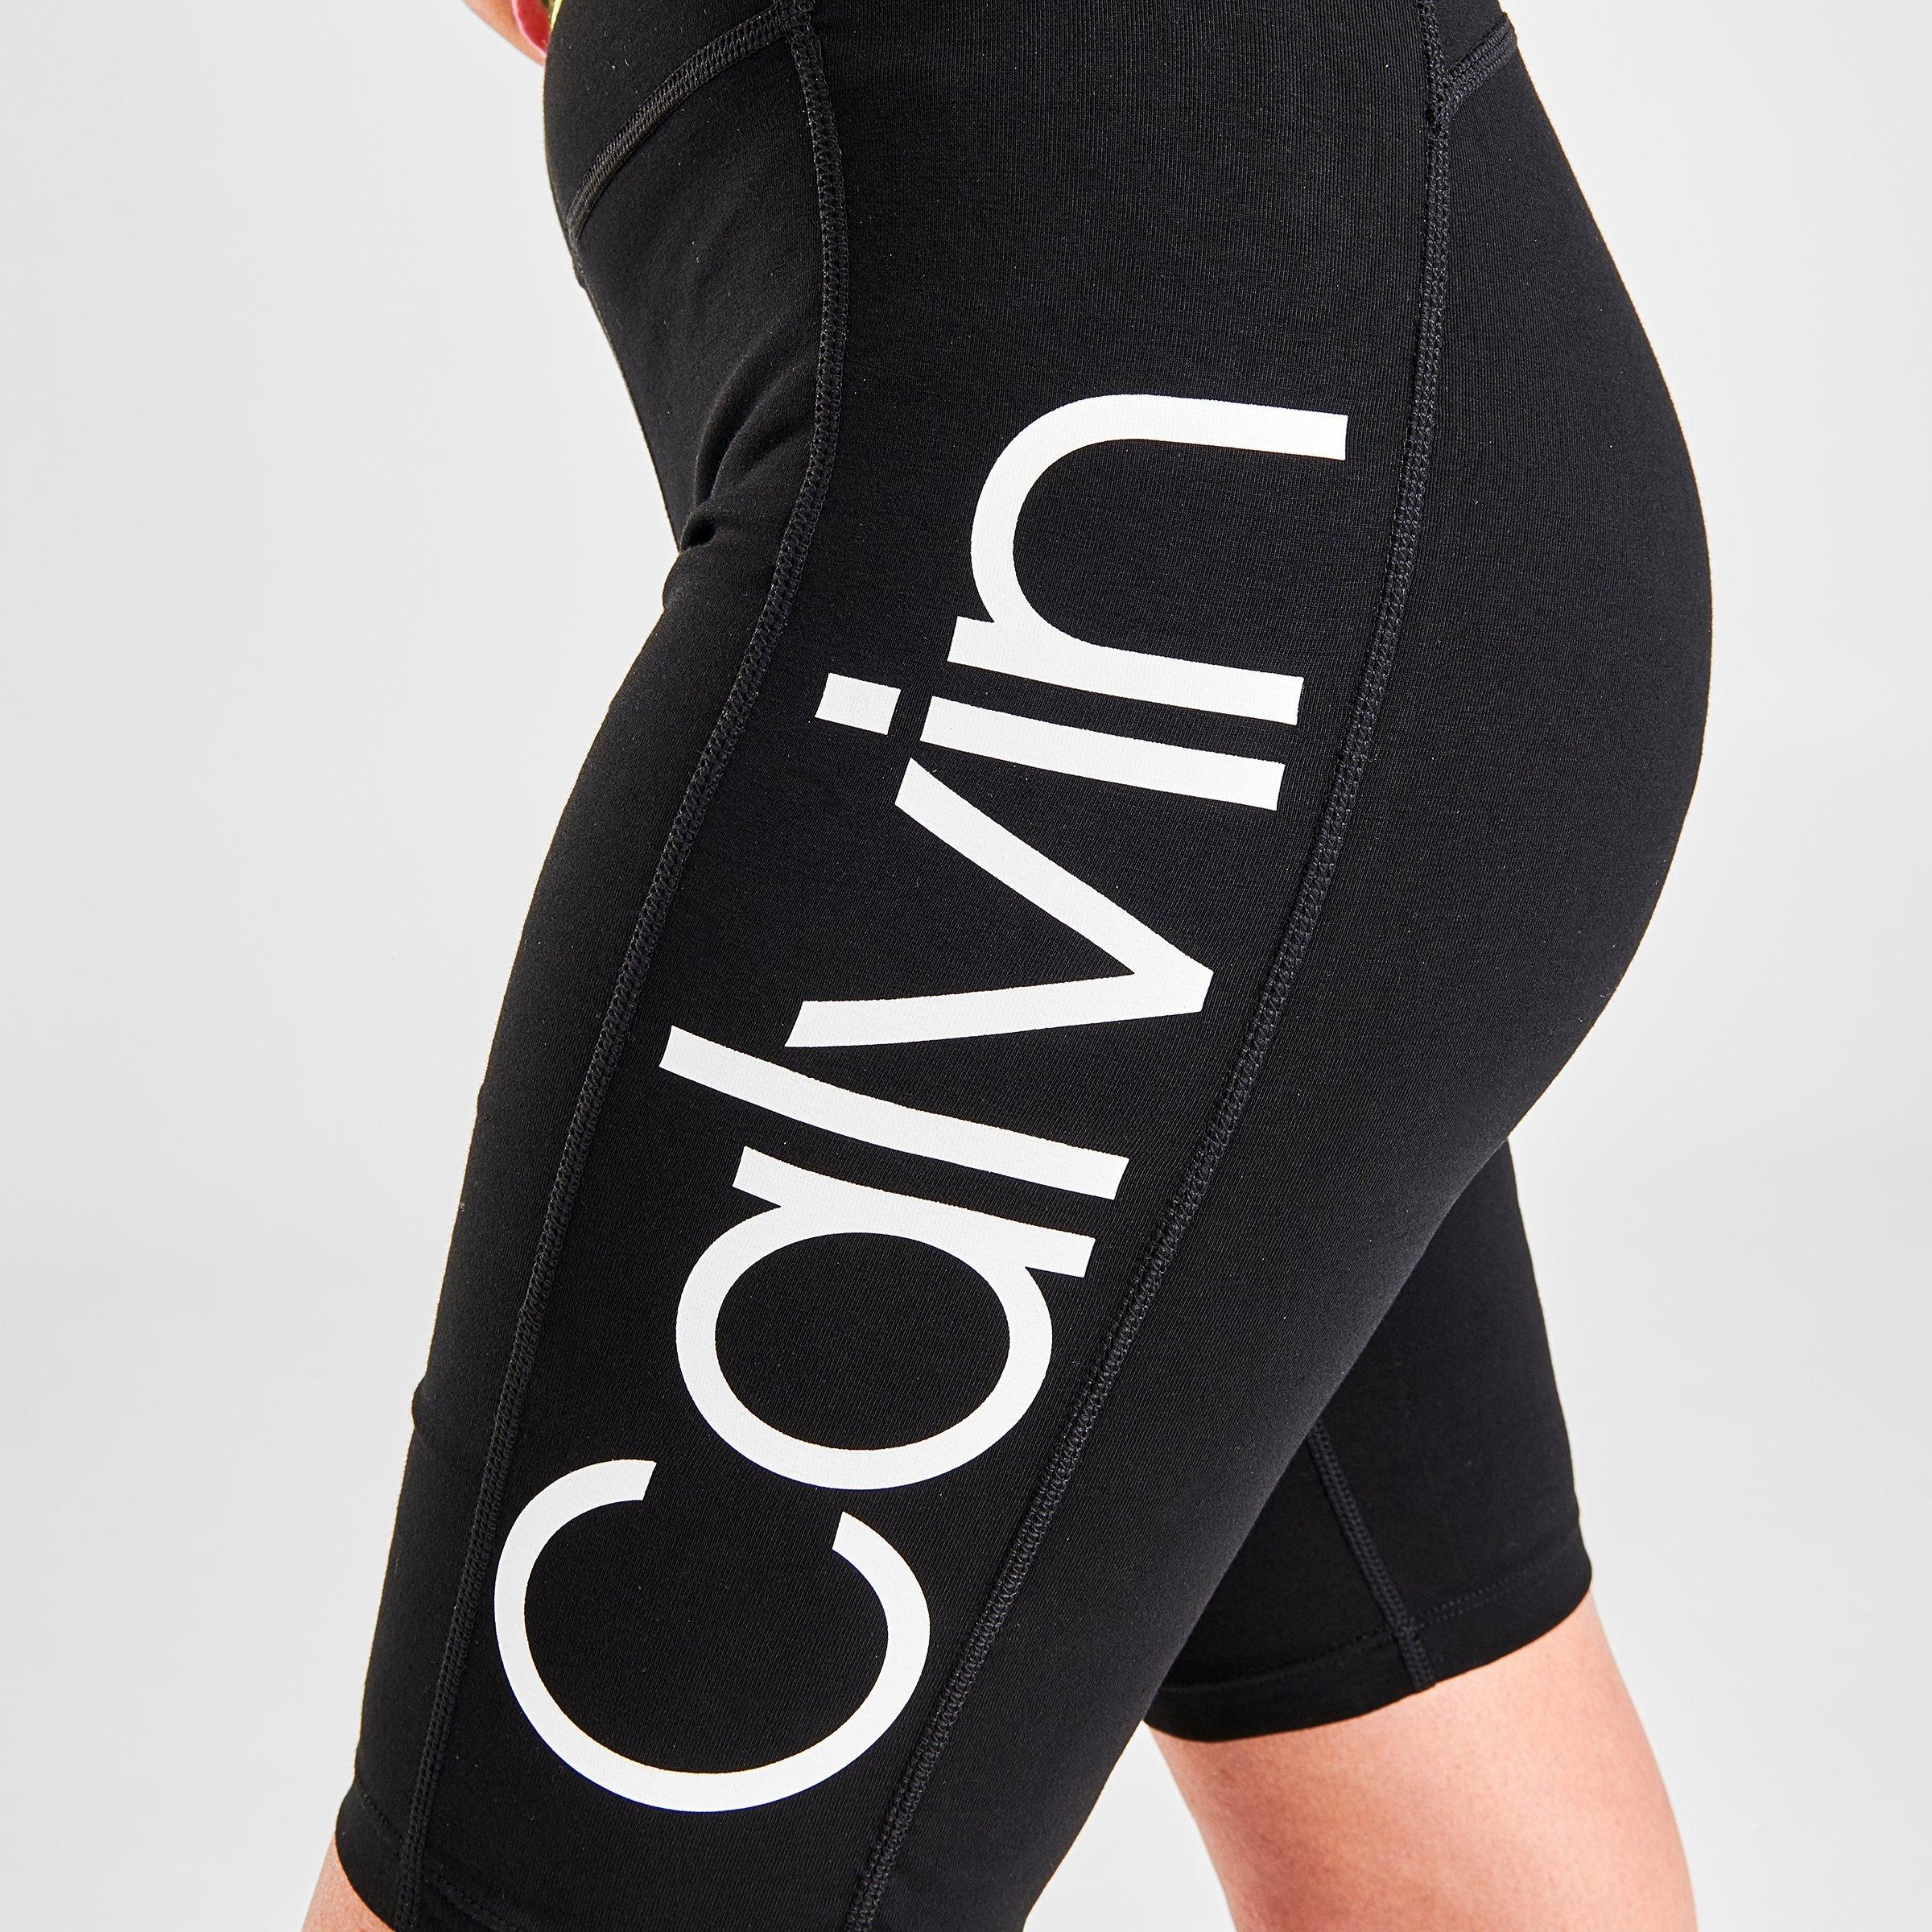 calvin klein cycling shorts